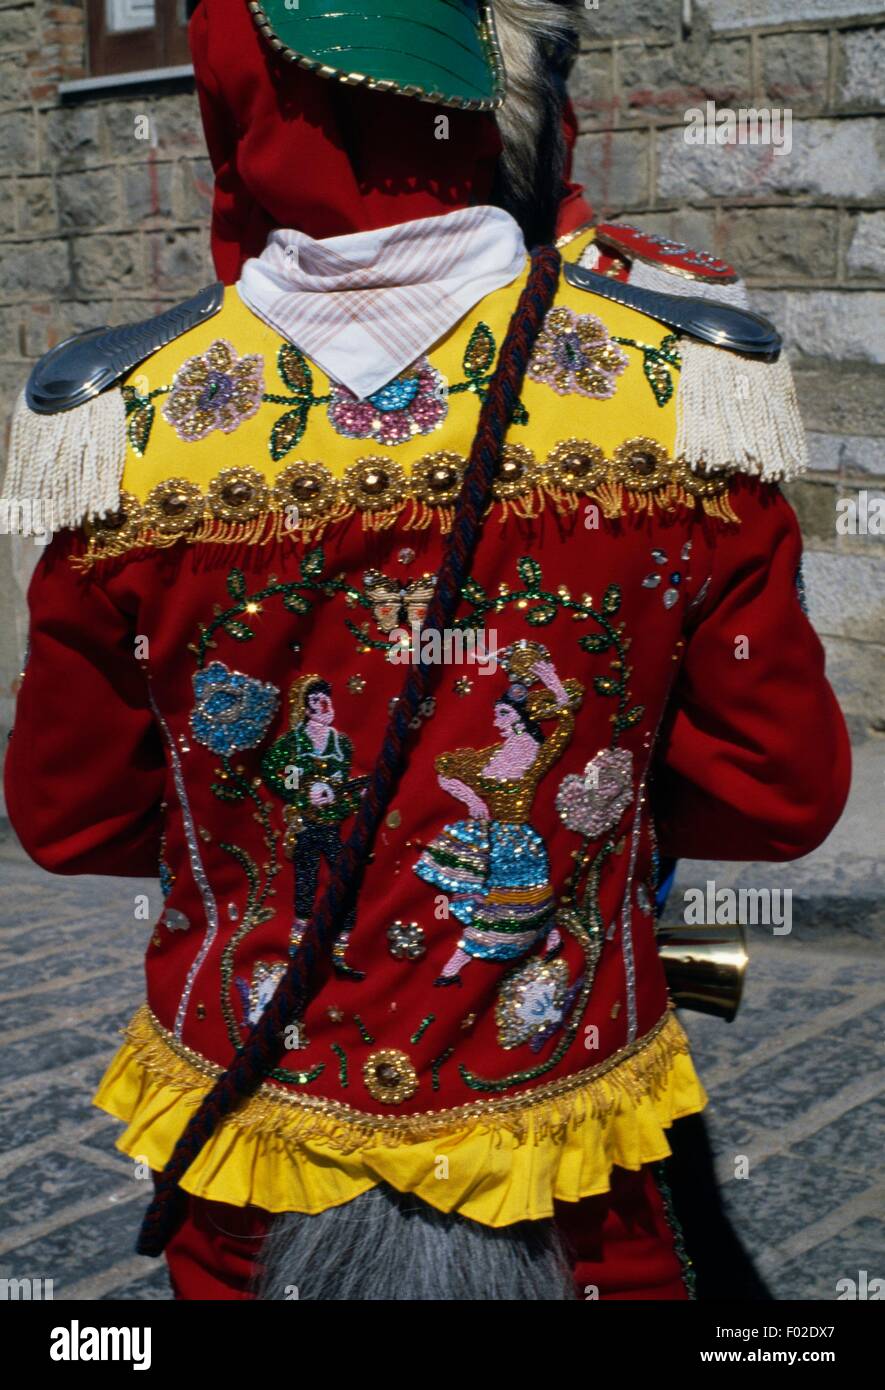 Traditionelle Kostüme getragen während des Festes der Juden gefeiert in der Karwoche in Sanfratello, Sizilien, Italien. Stockfoto